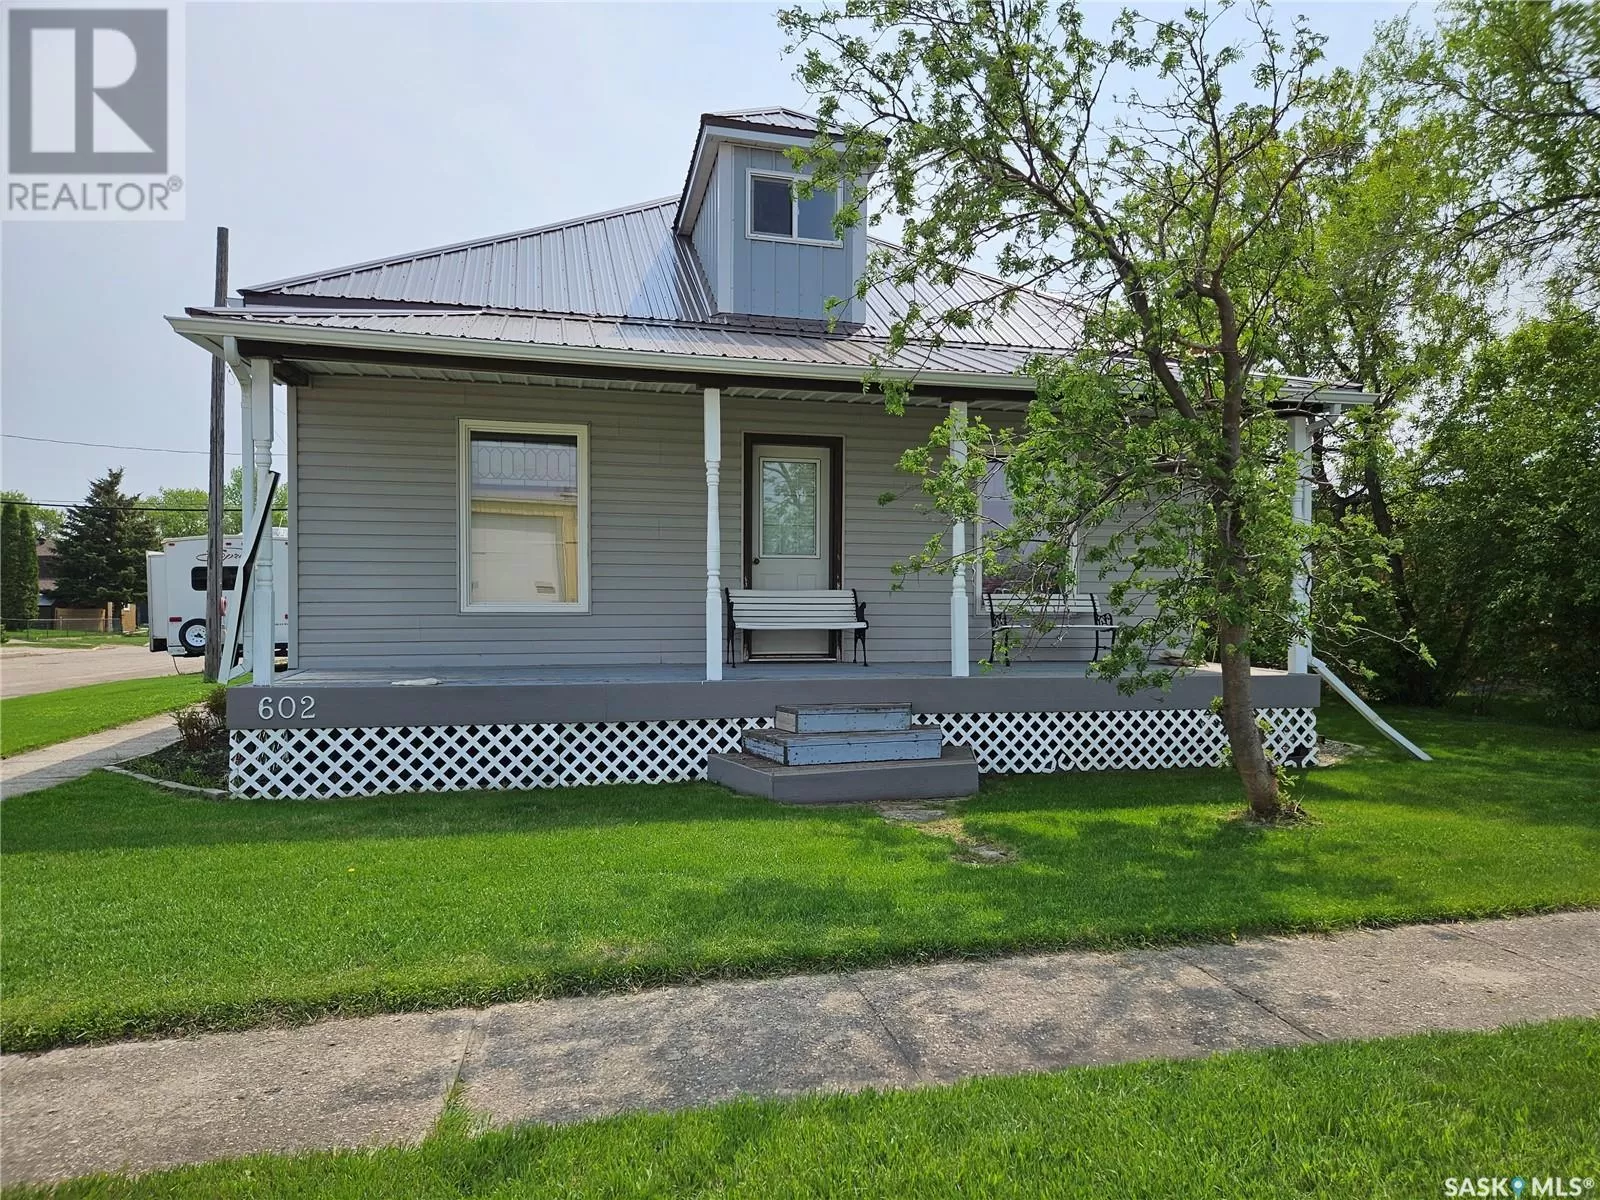 House for rent: 602 Railway Avenue, Bienfait, Saskatchewan S0C 0M0